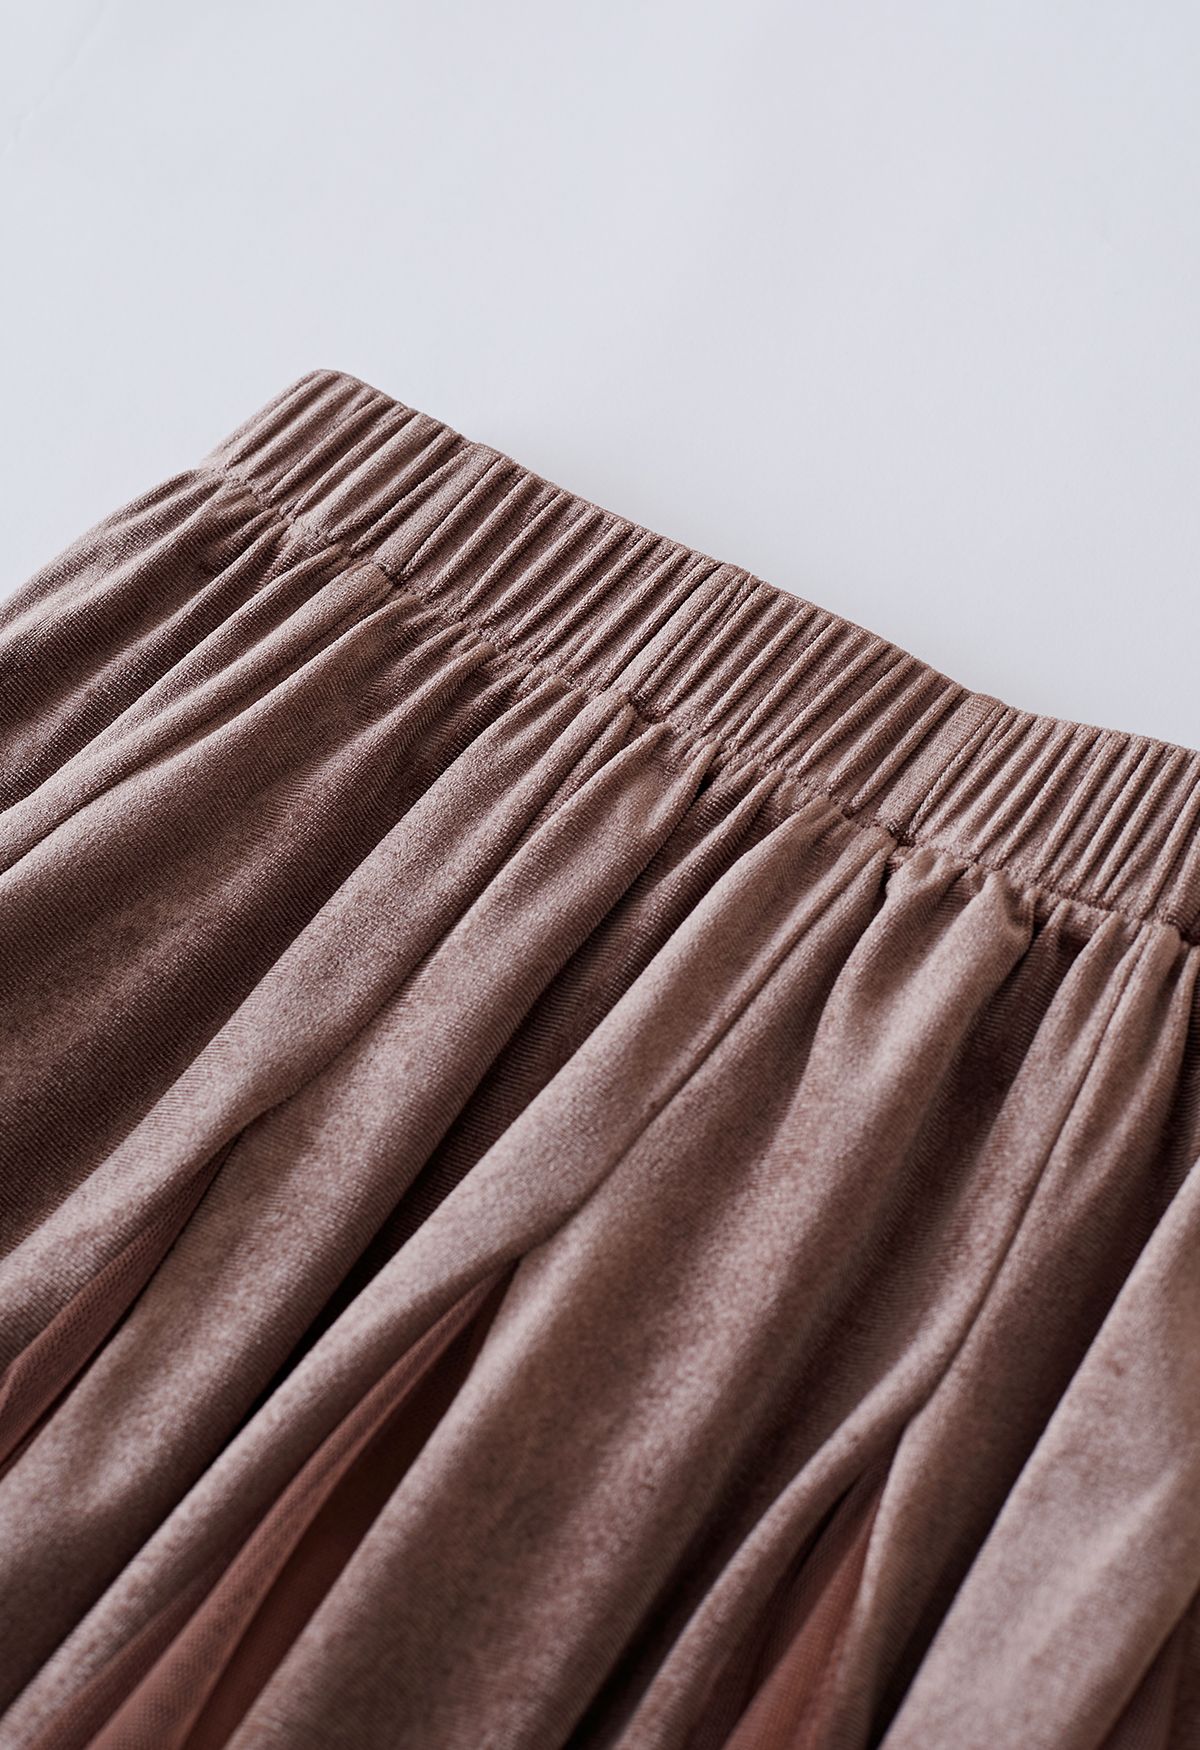 Falda midi con paneles de malla de terciopelo en marrón